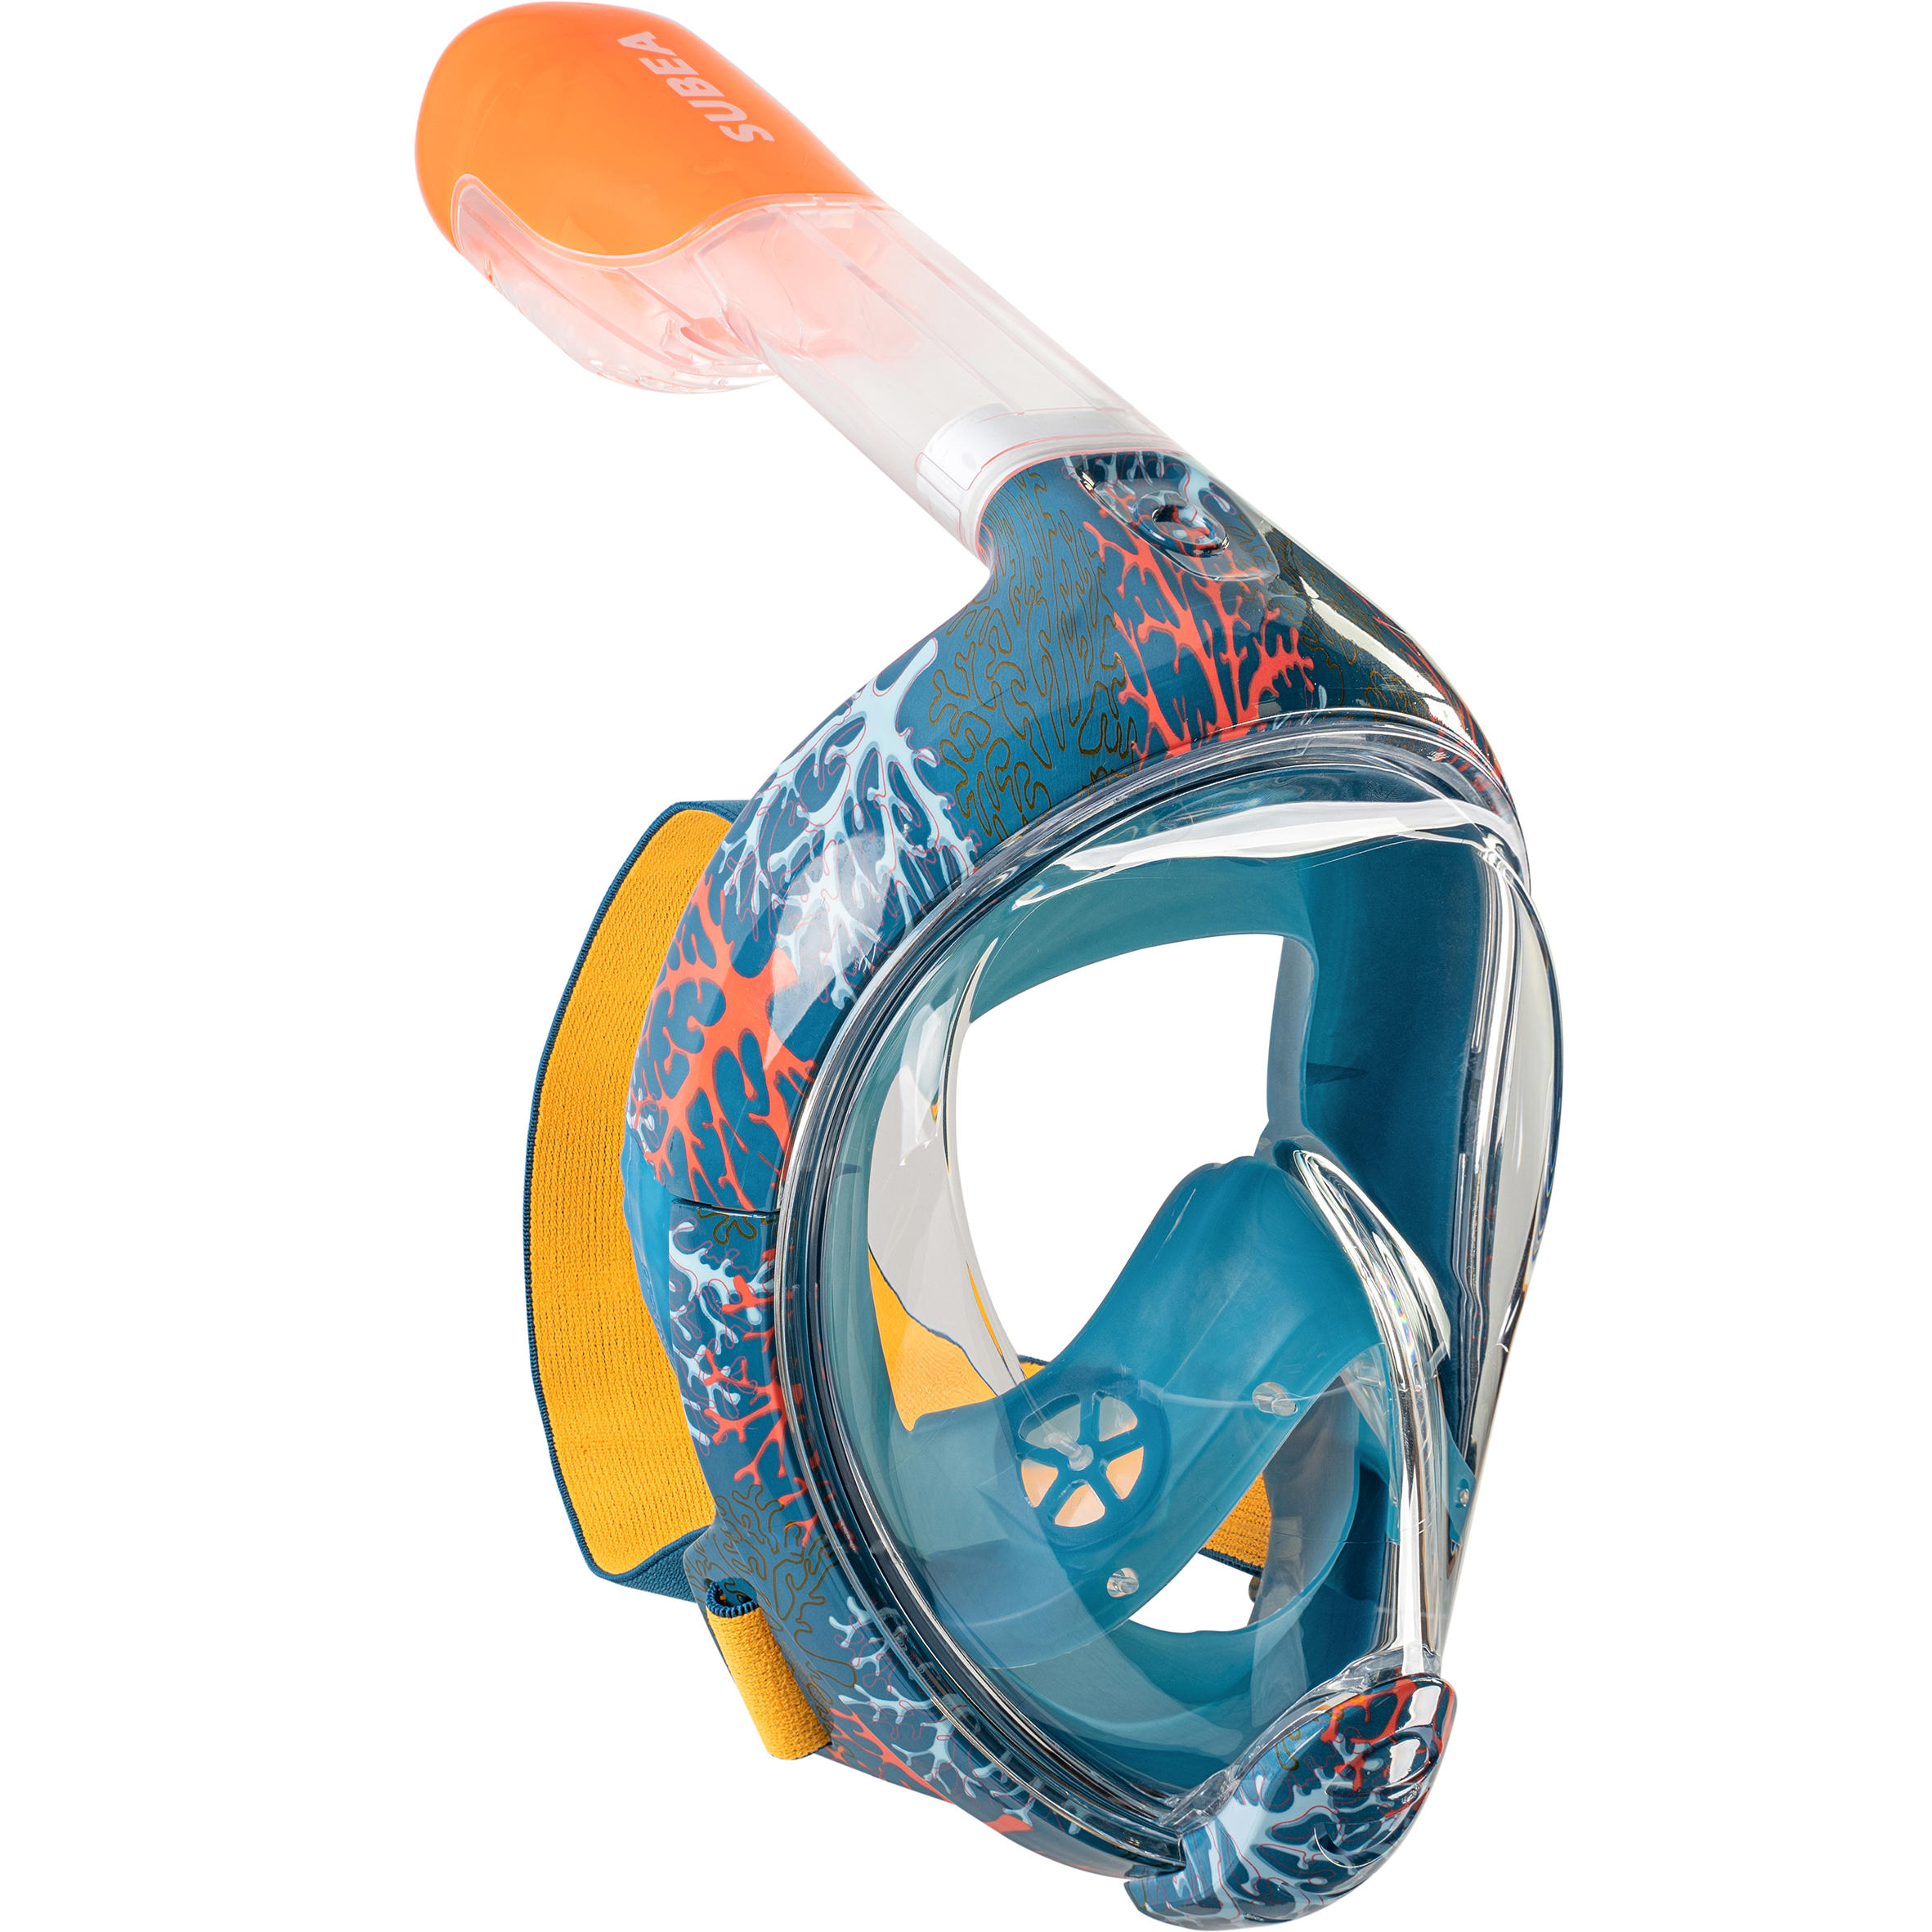 Маска на все лицо для подводного плавания. Полнолицевая маска для снорклинга SUBEA. Маска для подводного плавания Декатлон. Маска SUBEA XS. Декатлон маска для снорклинга.